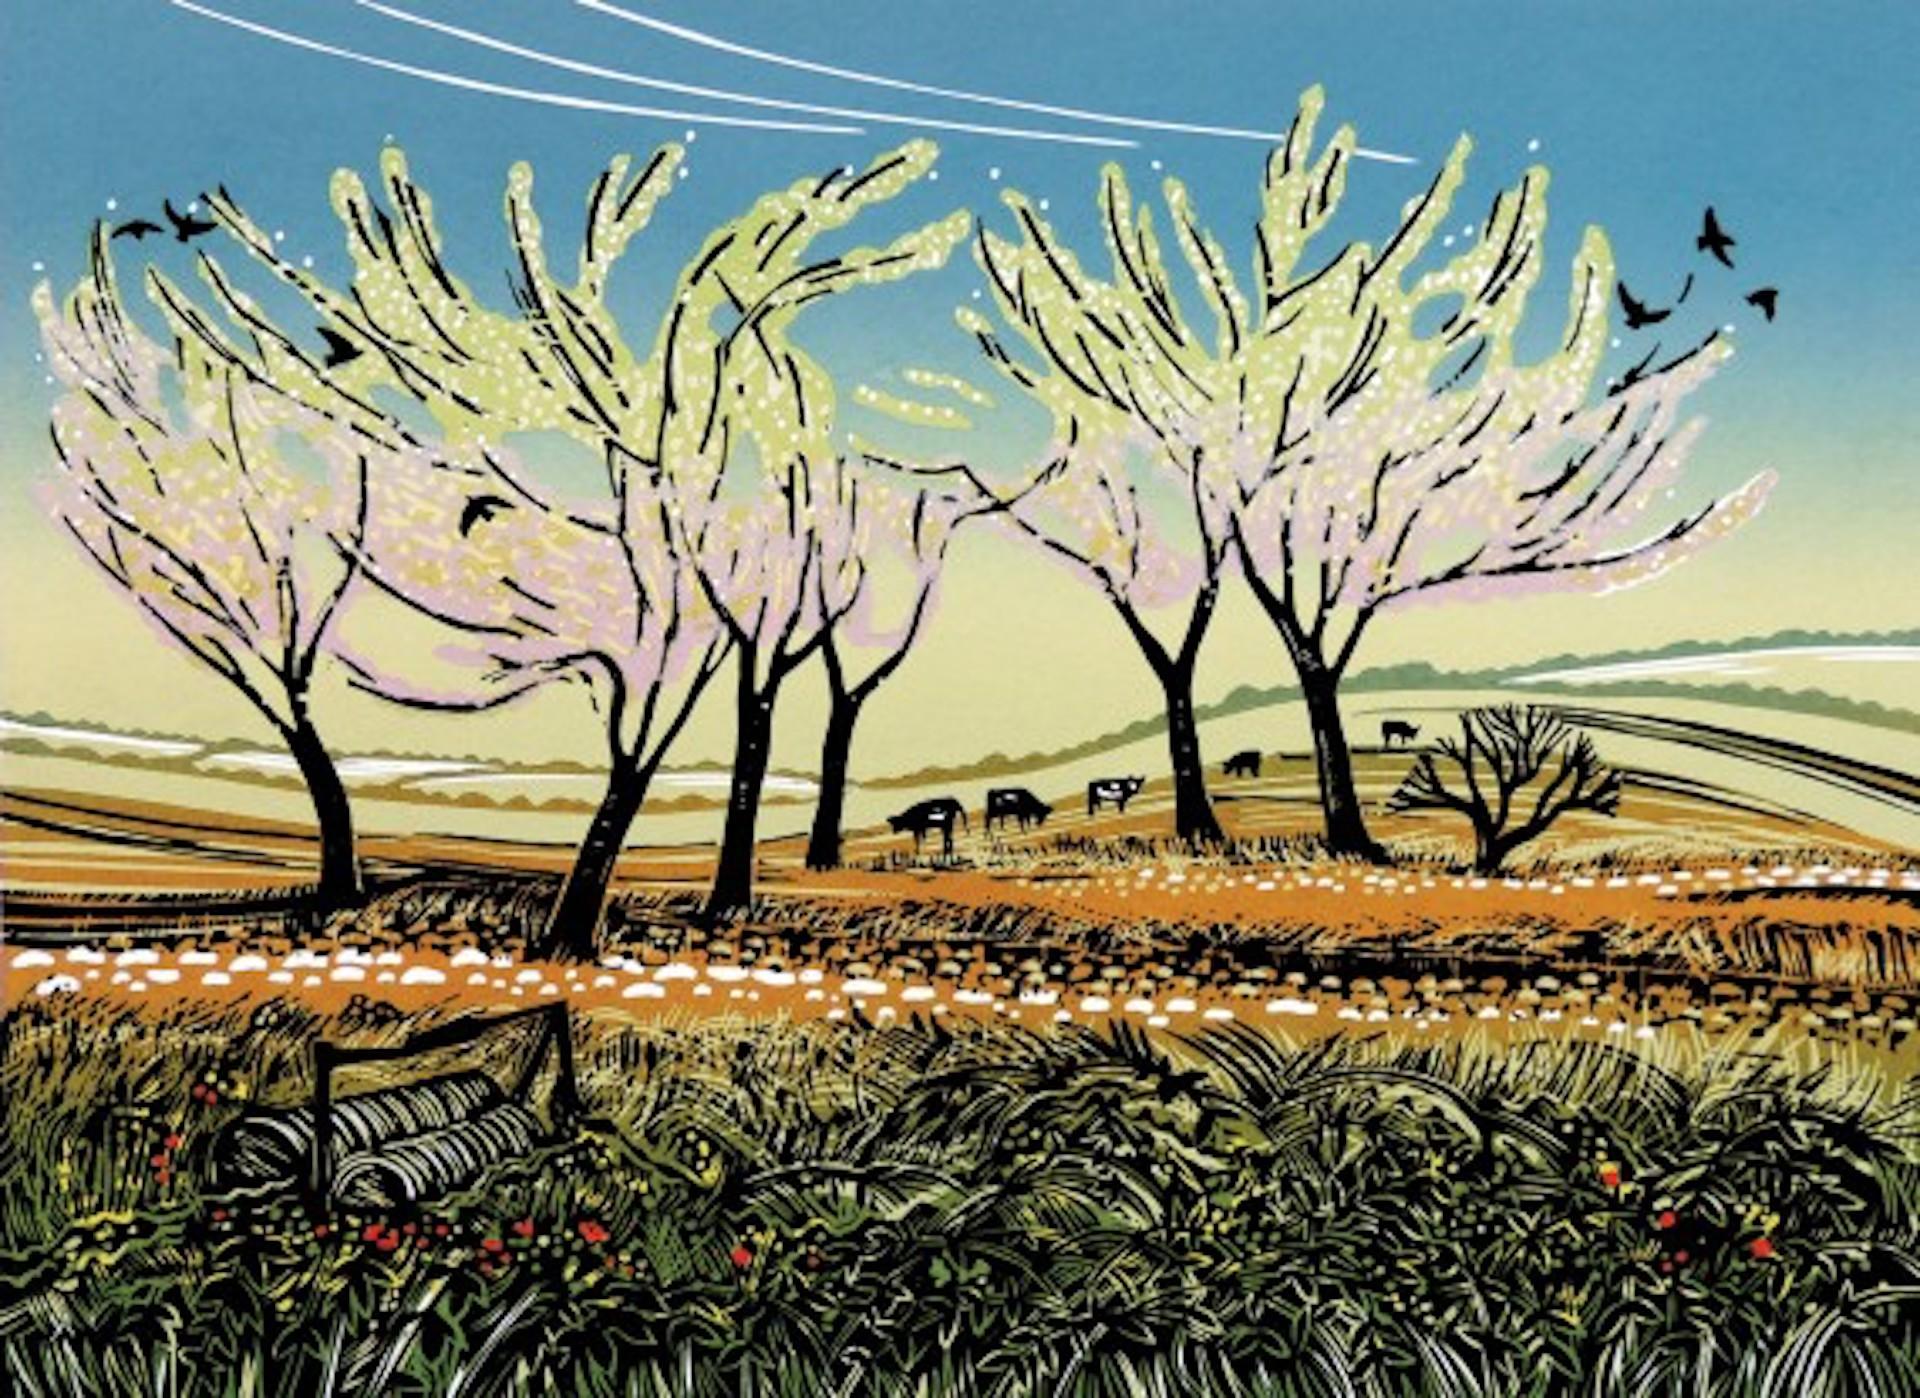 Blossom in the Wind, Landschaftsdruck in limitierter Auflage, Landschaftsdruck im Landhausstil, Linolschnitt 